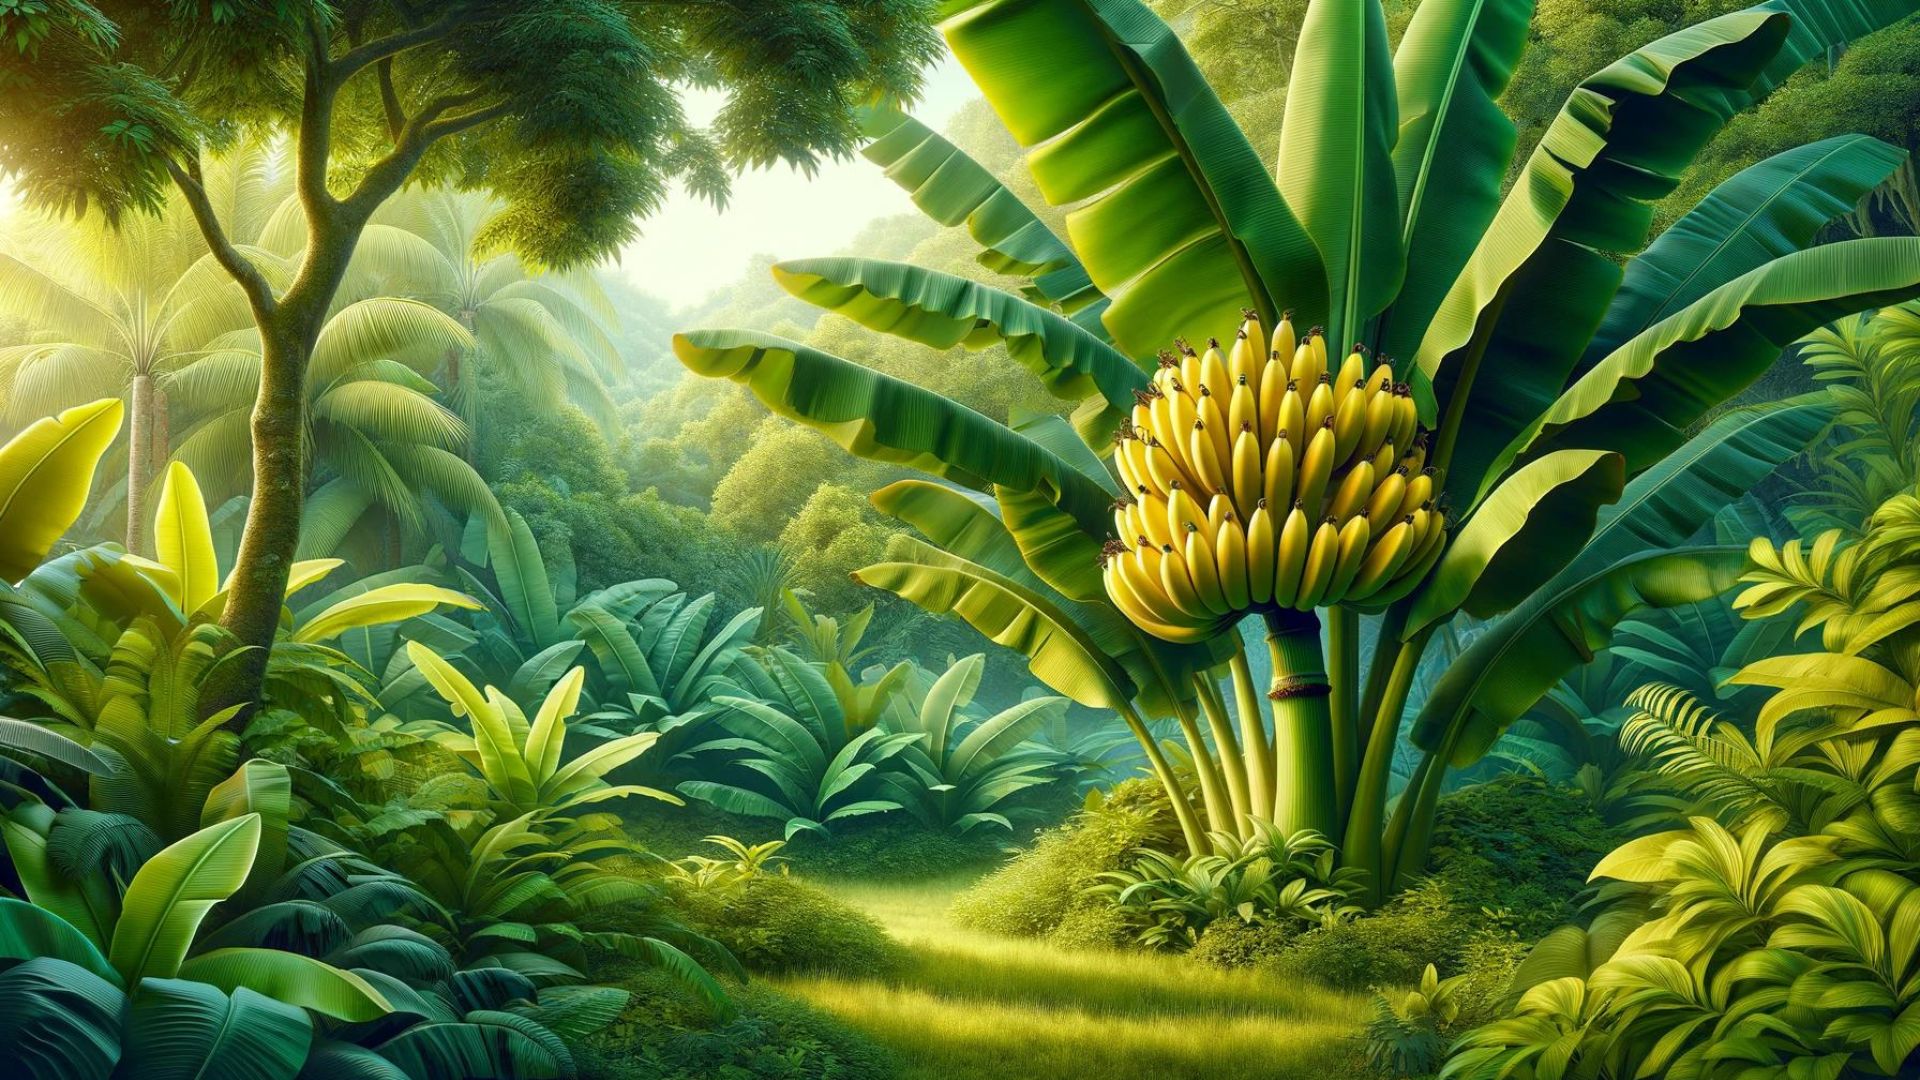 Bananas grow on trees